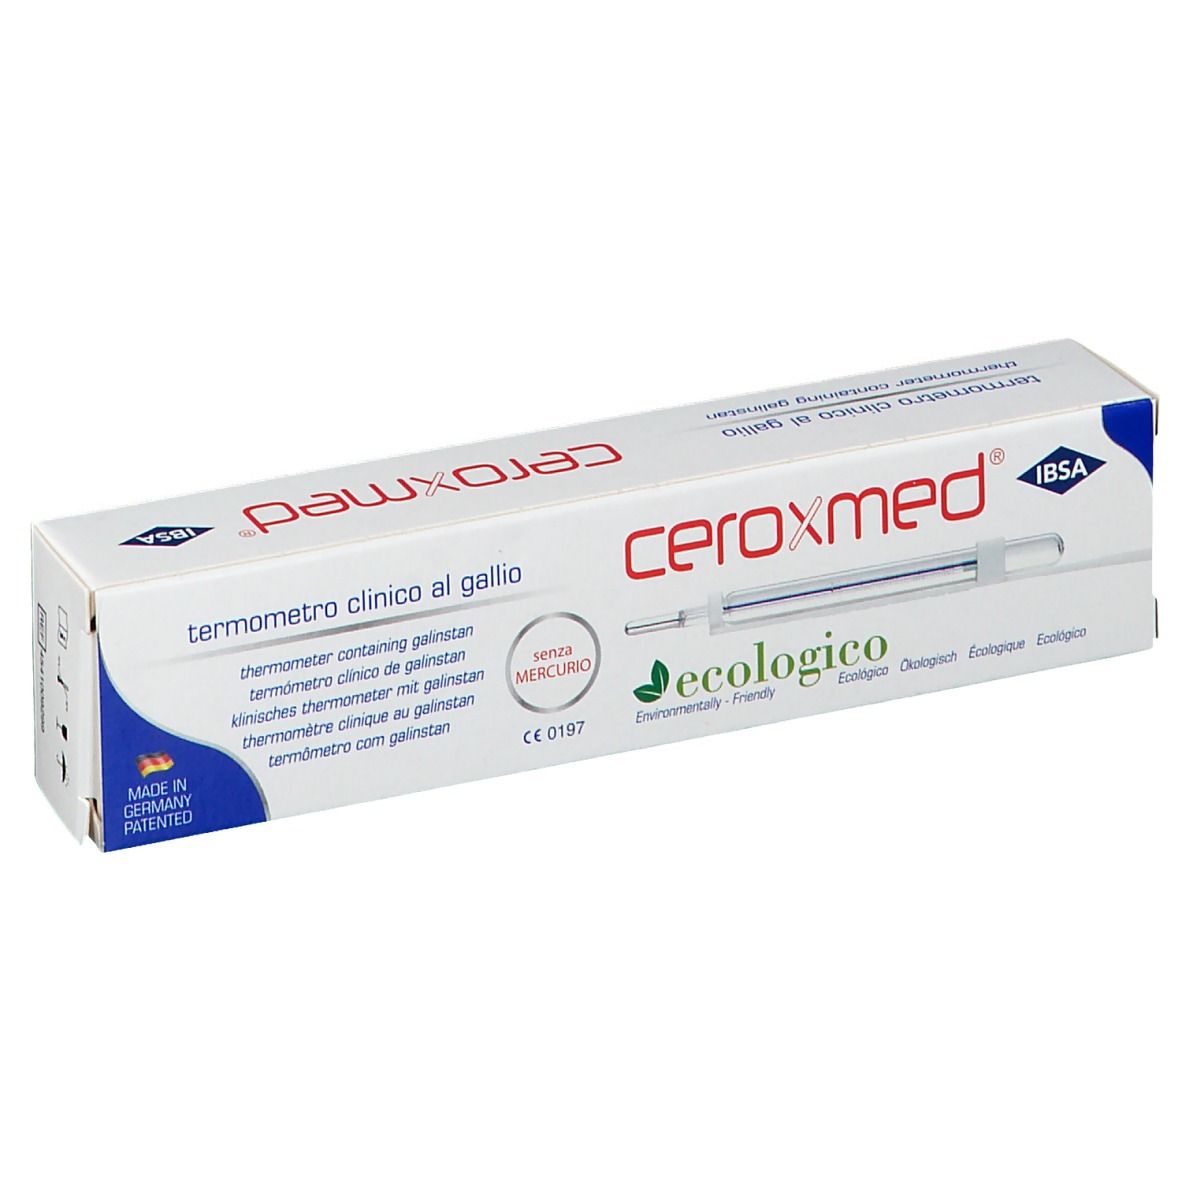 Ceroxmed® Termometro Clinico al Gallio